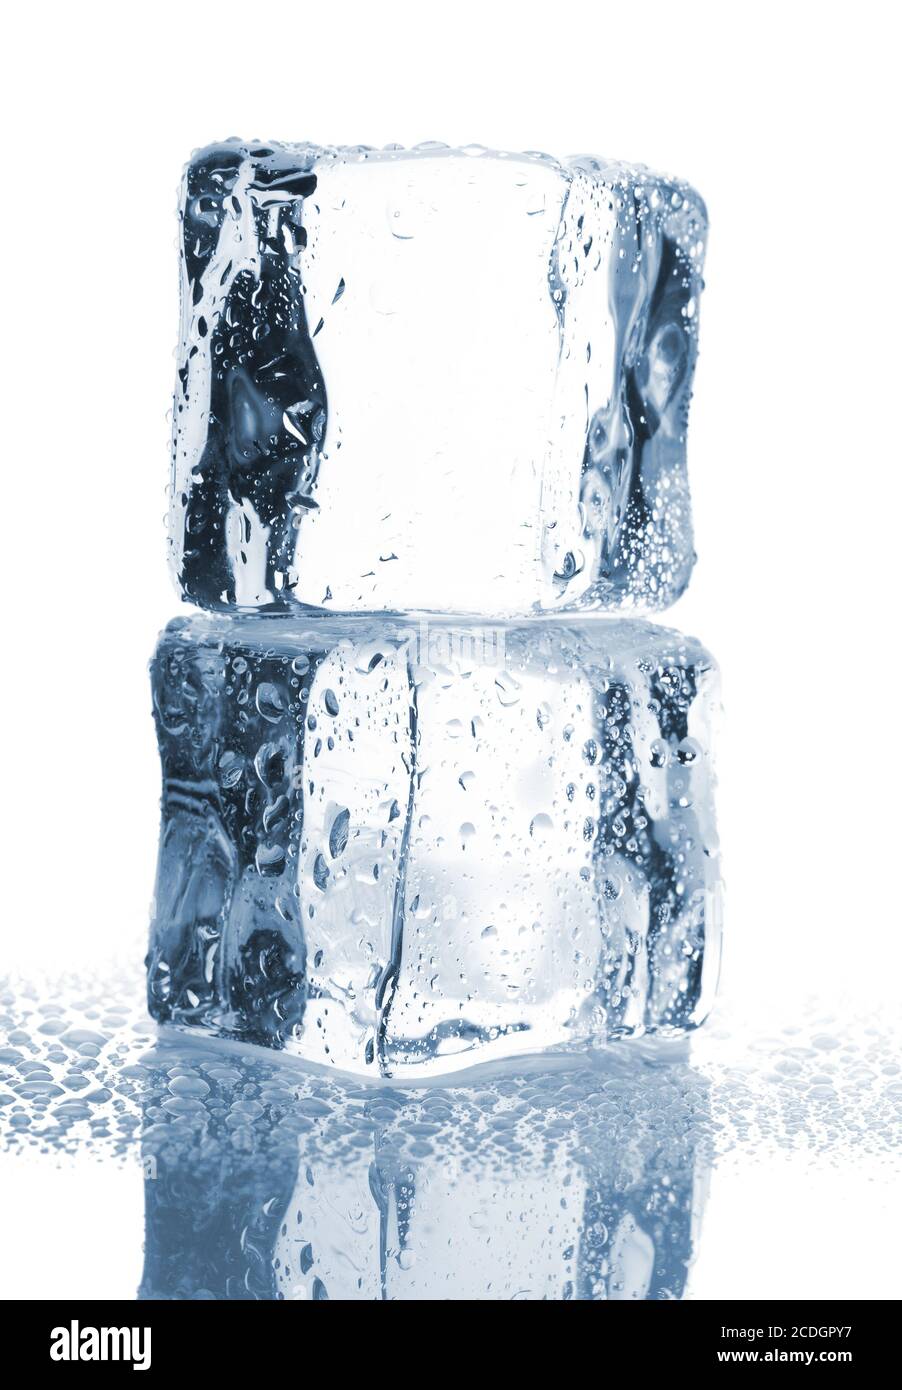 Deux des cubes de glace avec de l'eau gouttes Banque D'Images